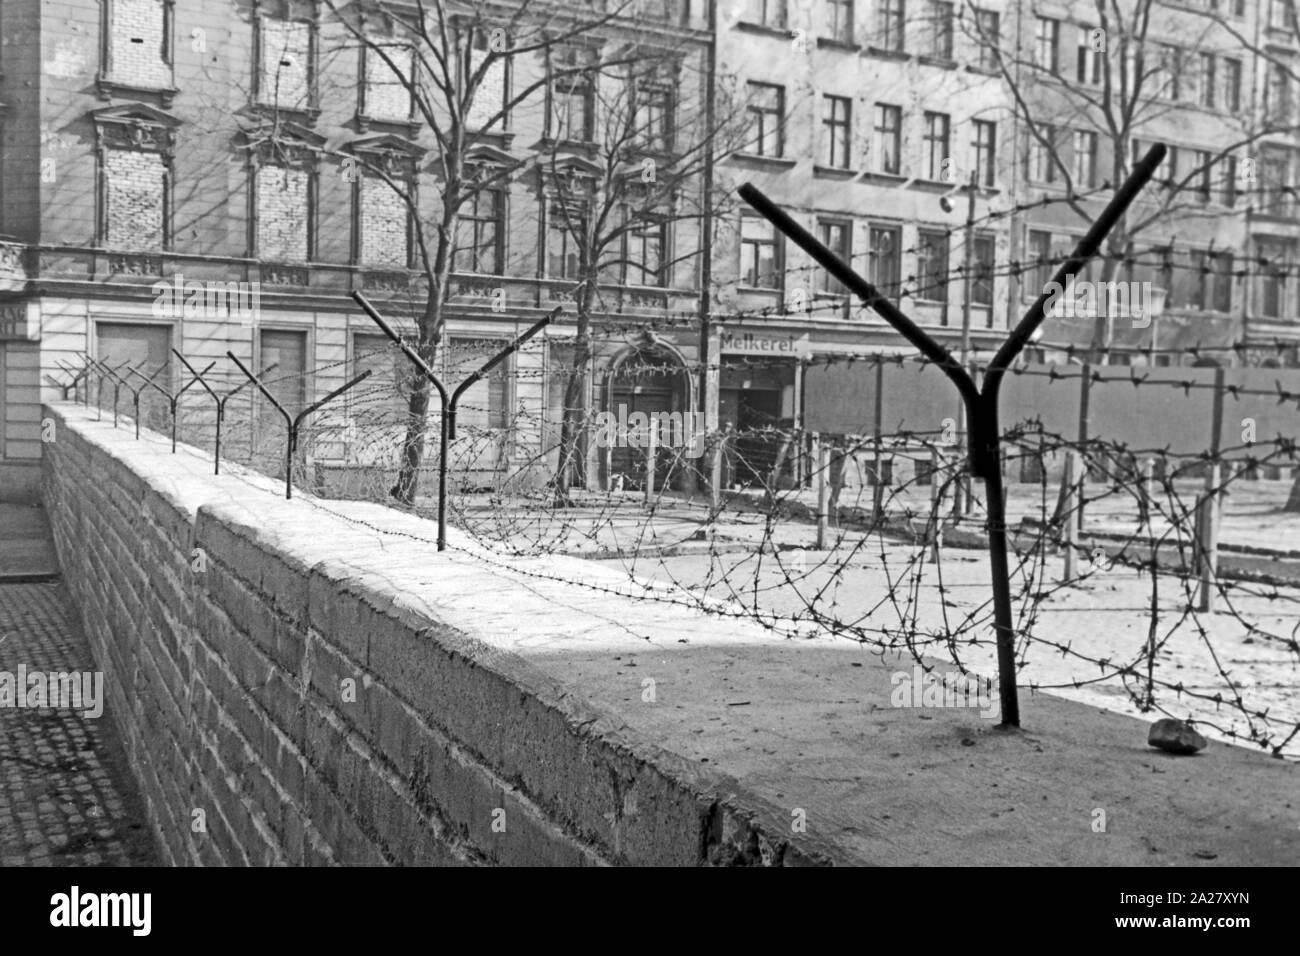 Mauer und Grenzanlagen in der Nähe der Bernauer Straße in Berlin, Deutschland 1963. Wall and border facilities near Bernauer Strasse street in Berlin, Germany 1963. Stock Photo